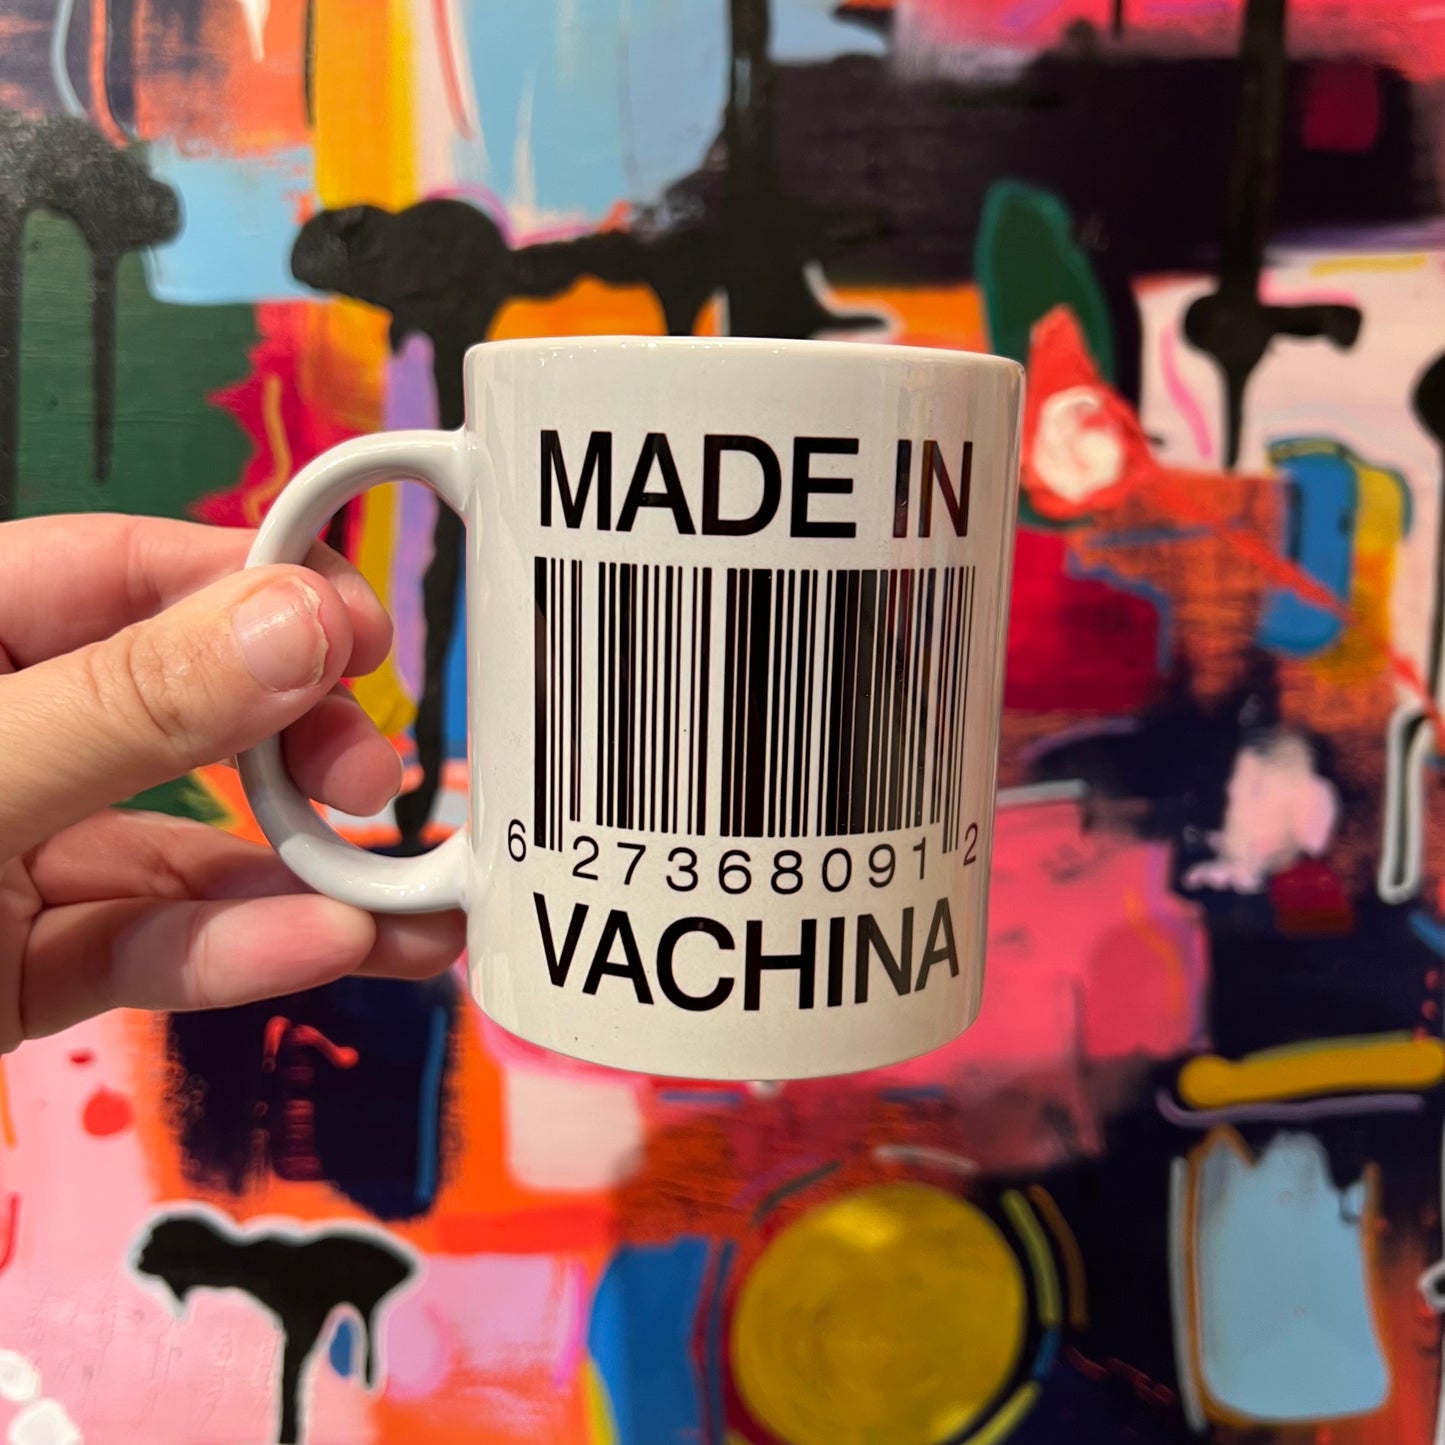 Made in vachina mug